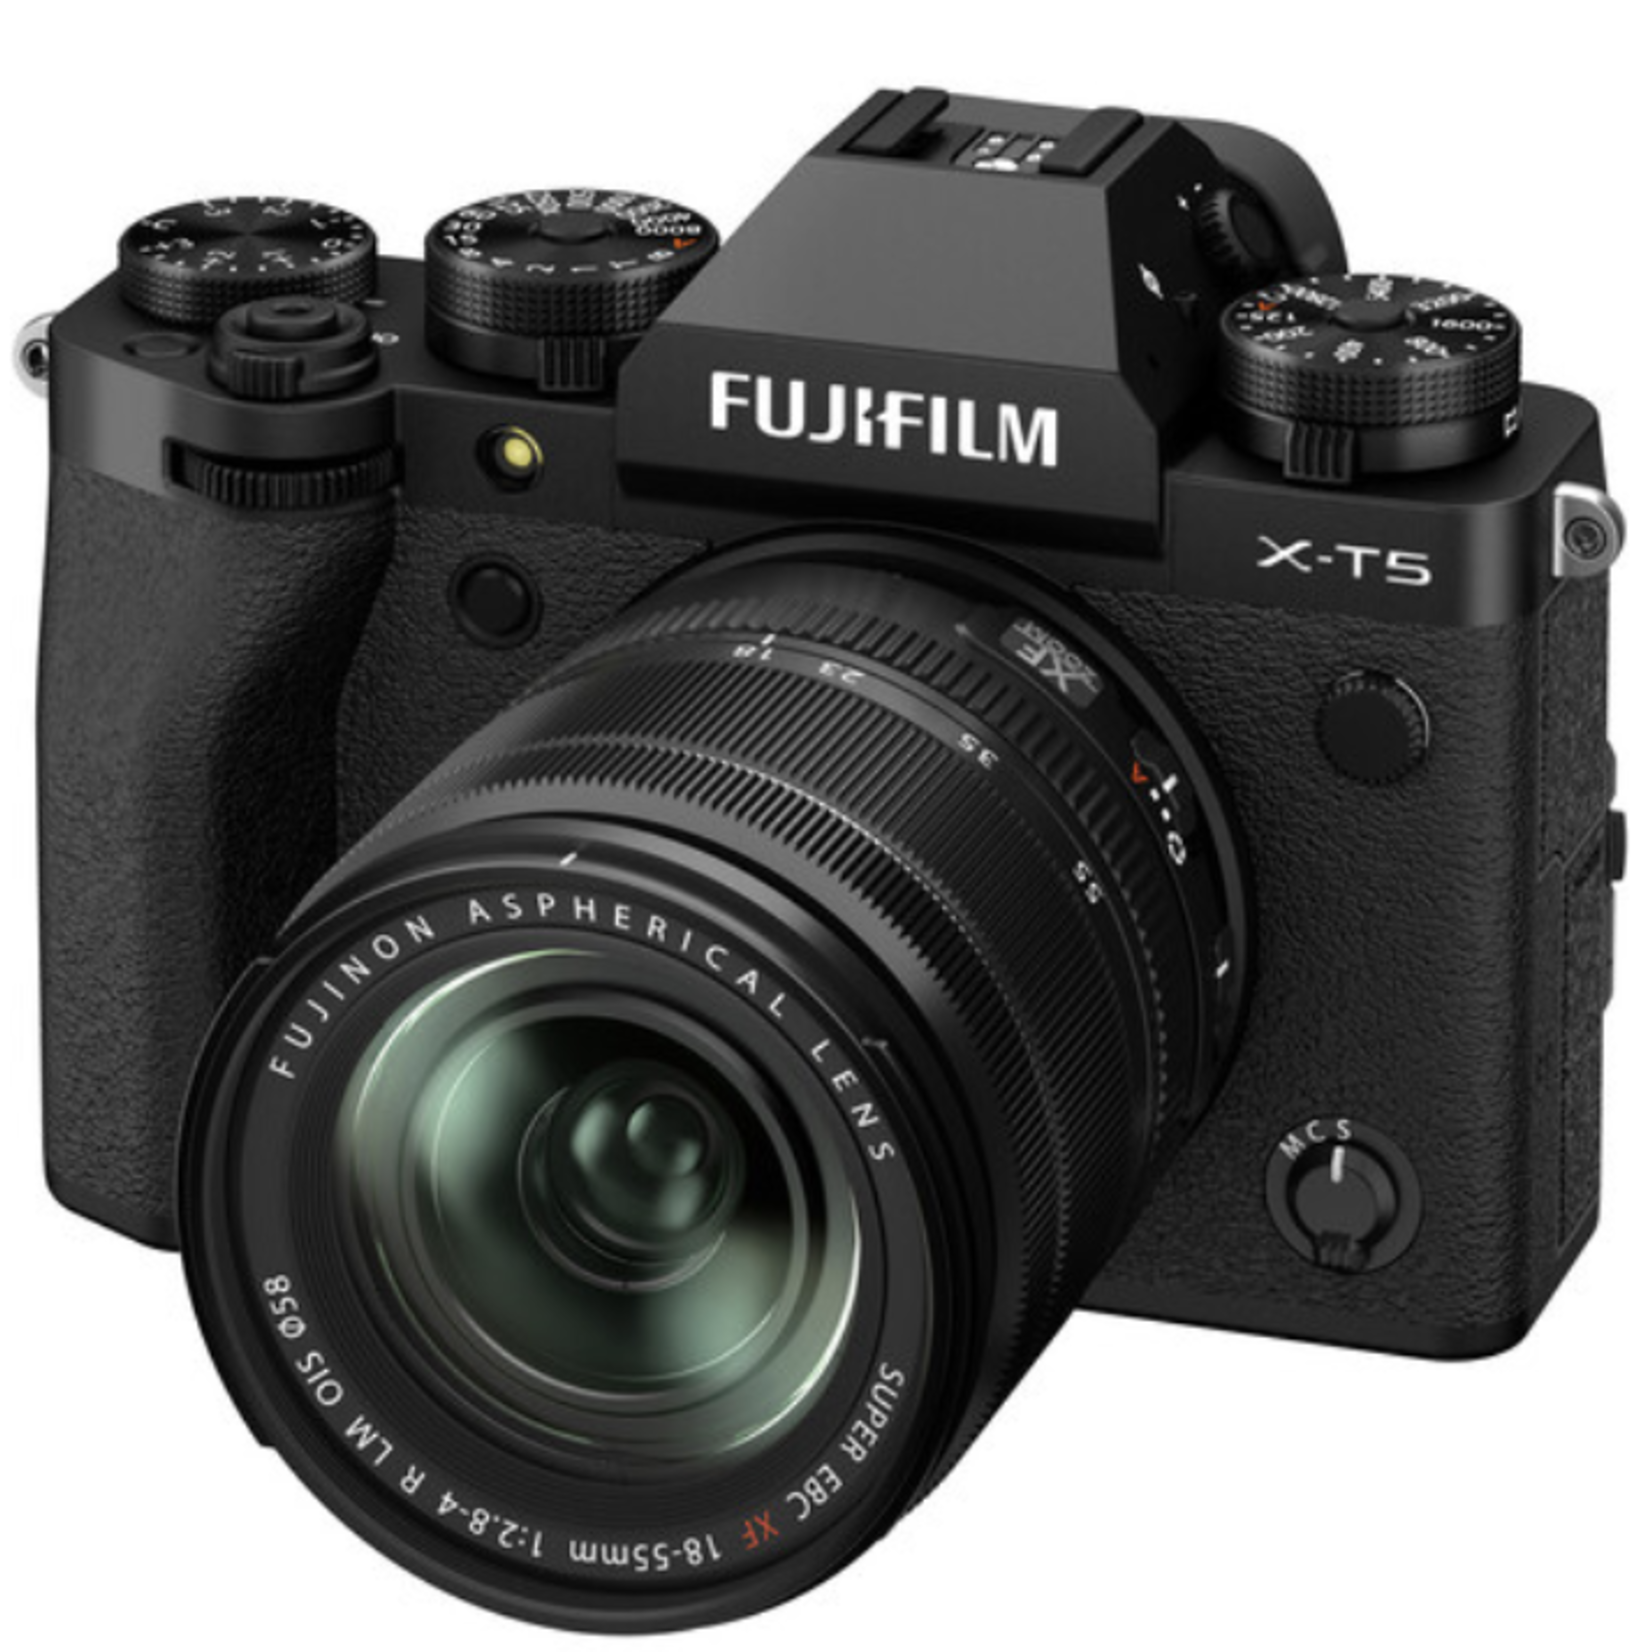 FujiFilm Fujifilm X-T5 XF18-55mm Kit Black